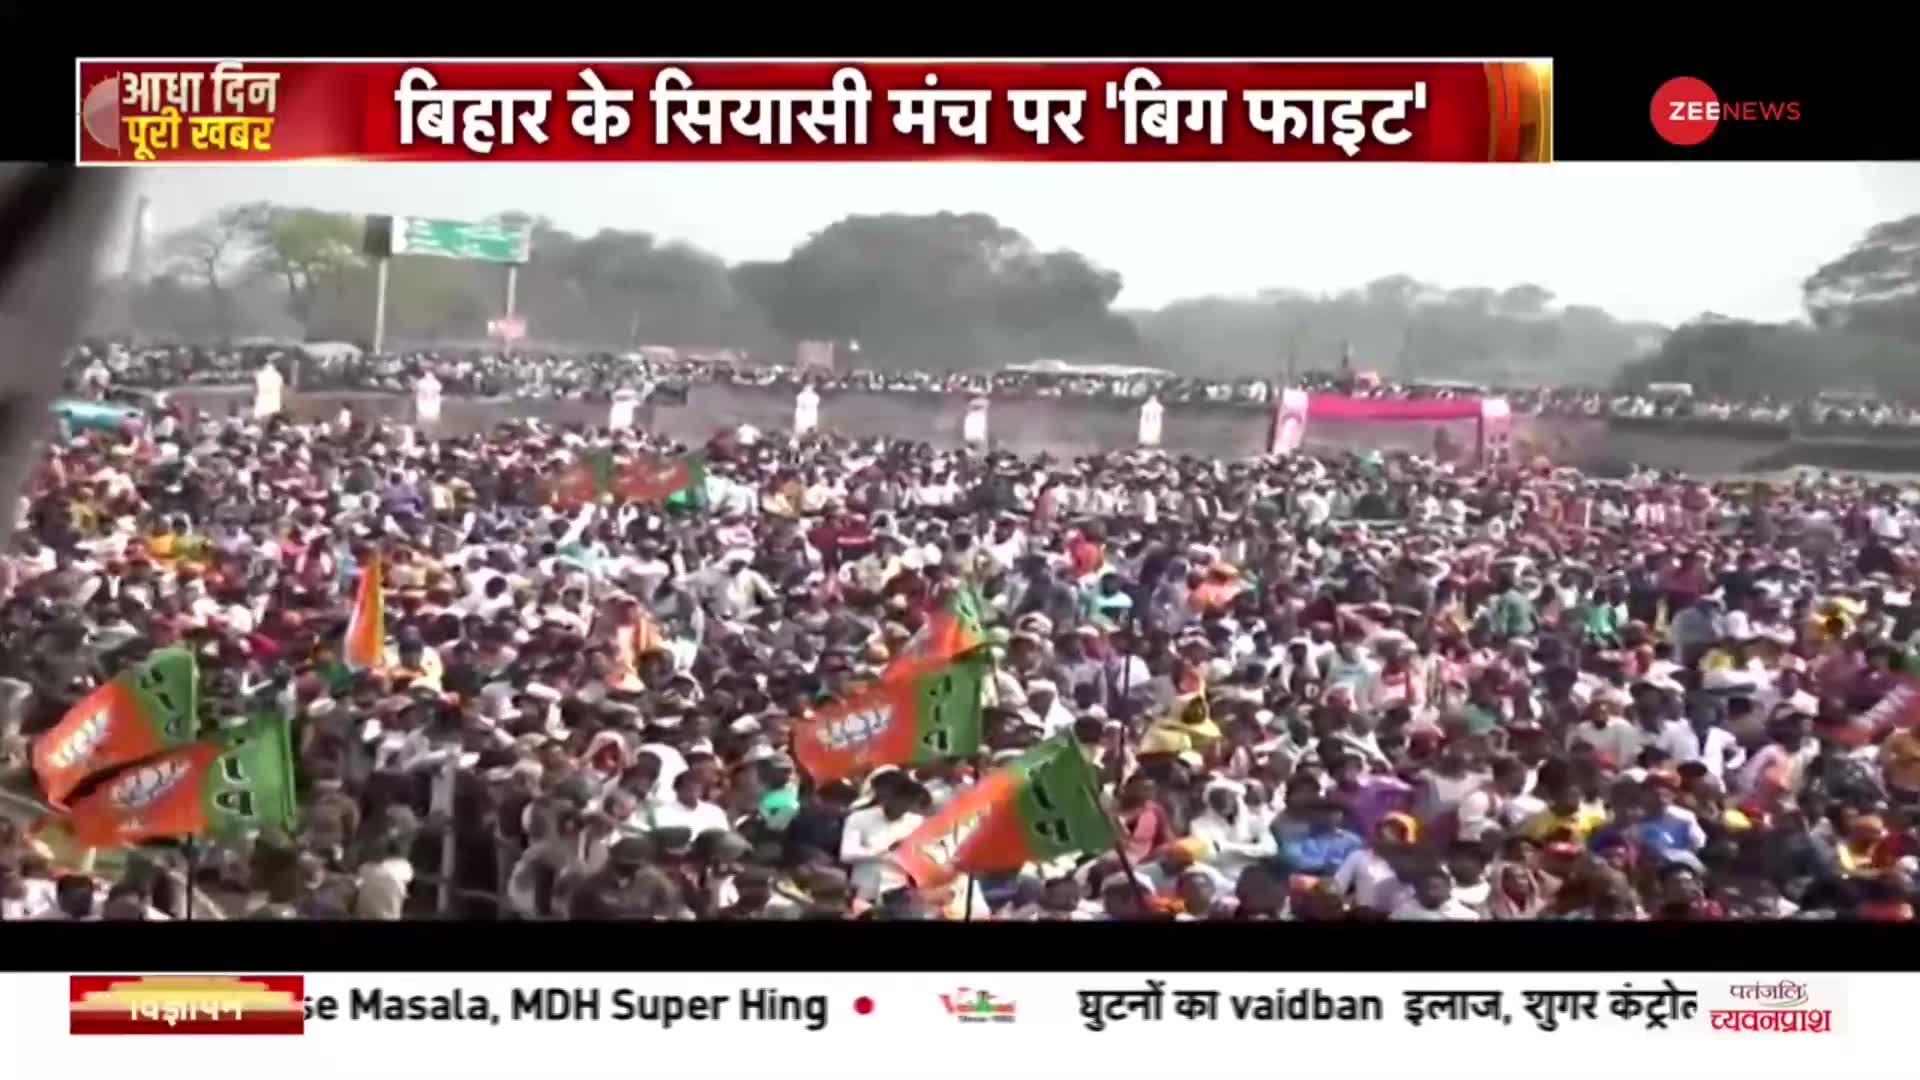 Bihar के चंपारण में गृहमंत्री की रैली, बोले- 70 साल तक कांग्रेस और लालू शौचालय नहीं दे पाए